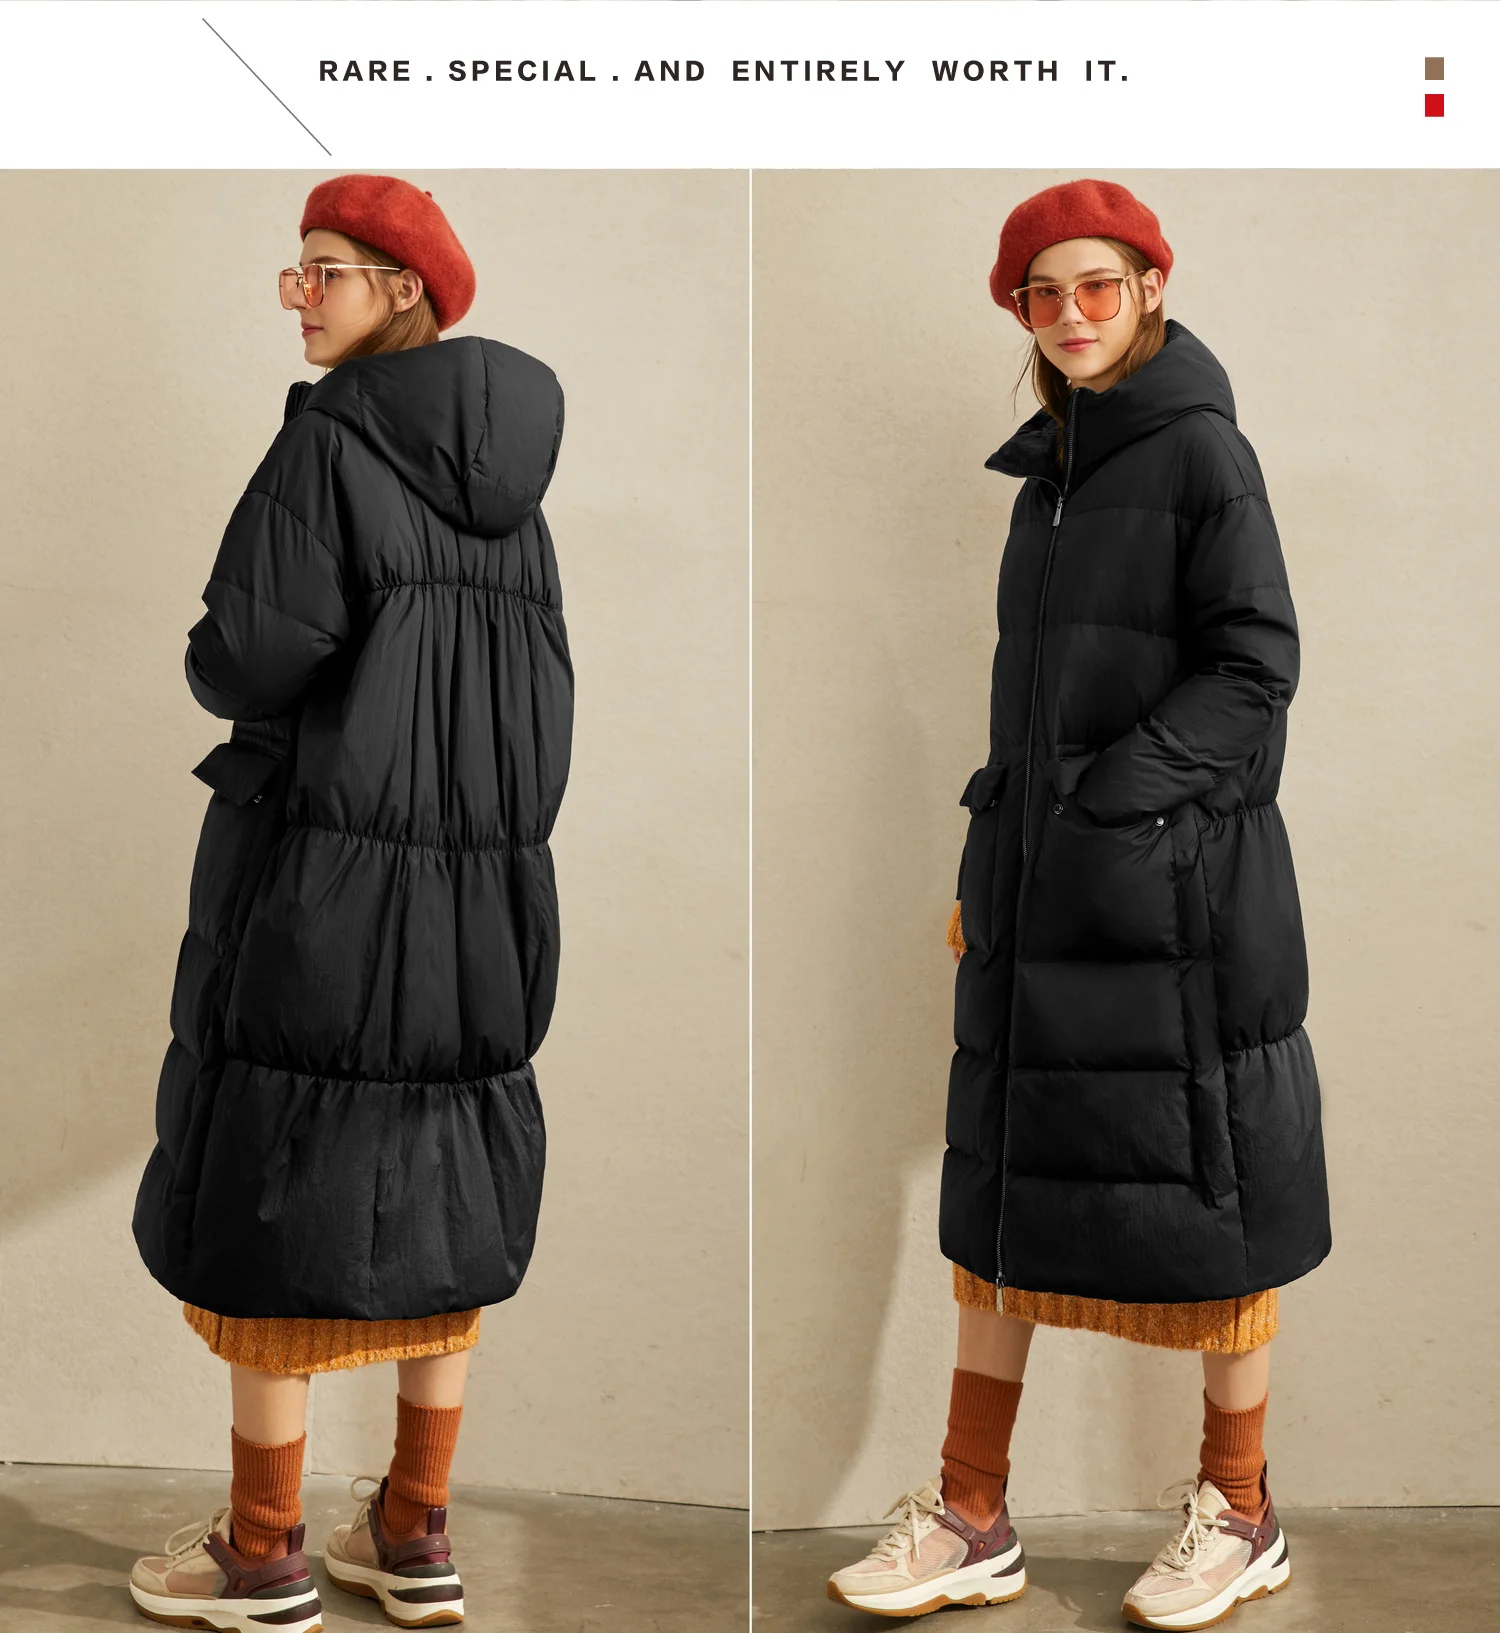 Amii, корейско-длинные, корейско-длинные, Сапоги выше колена, без шнуровки, на тонком, пуховая куртка, Женская зима стиль, записная книжка С ПЕРЕПЛЕТОМ с крышкой, сохраняющие максимальное количество тепла брендовый костюм